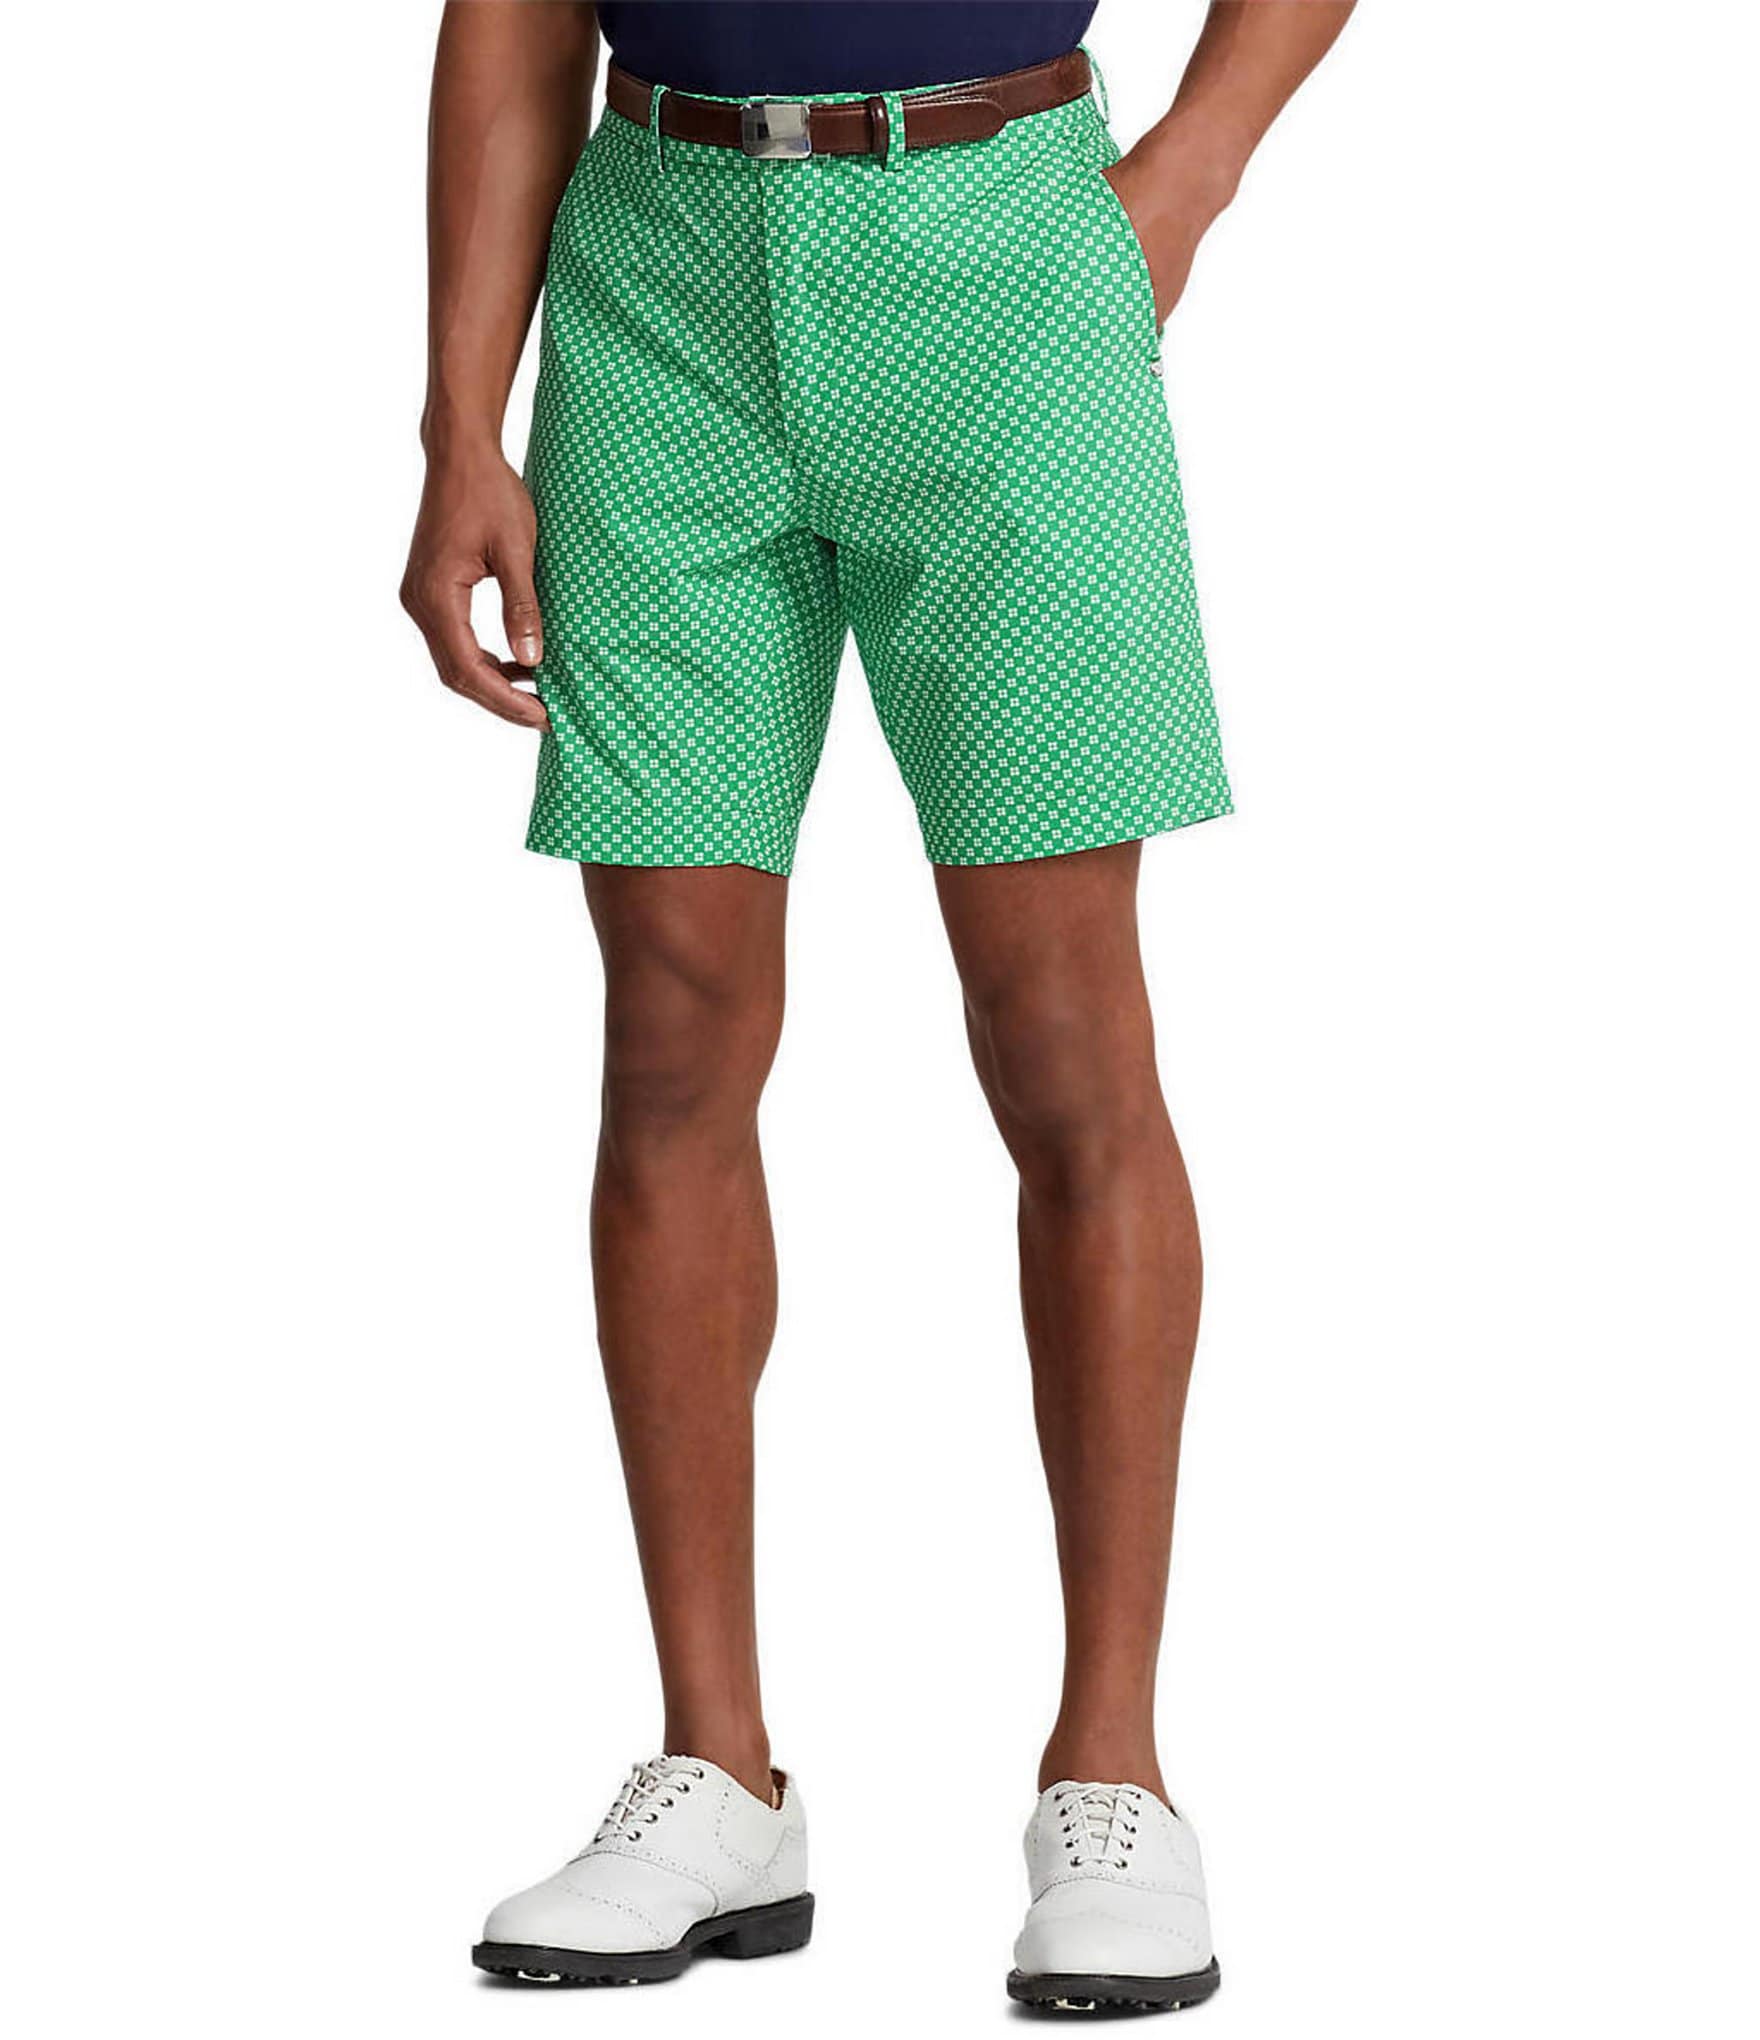 RLX Ralph Lauren Men's Golf Shorts Size 32 Flat Front Yellow/Green Camo ...